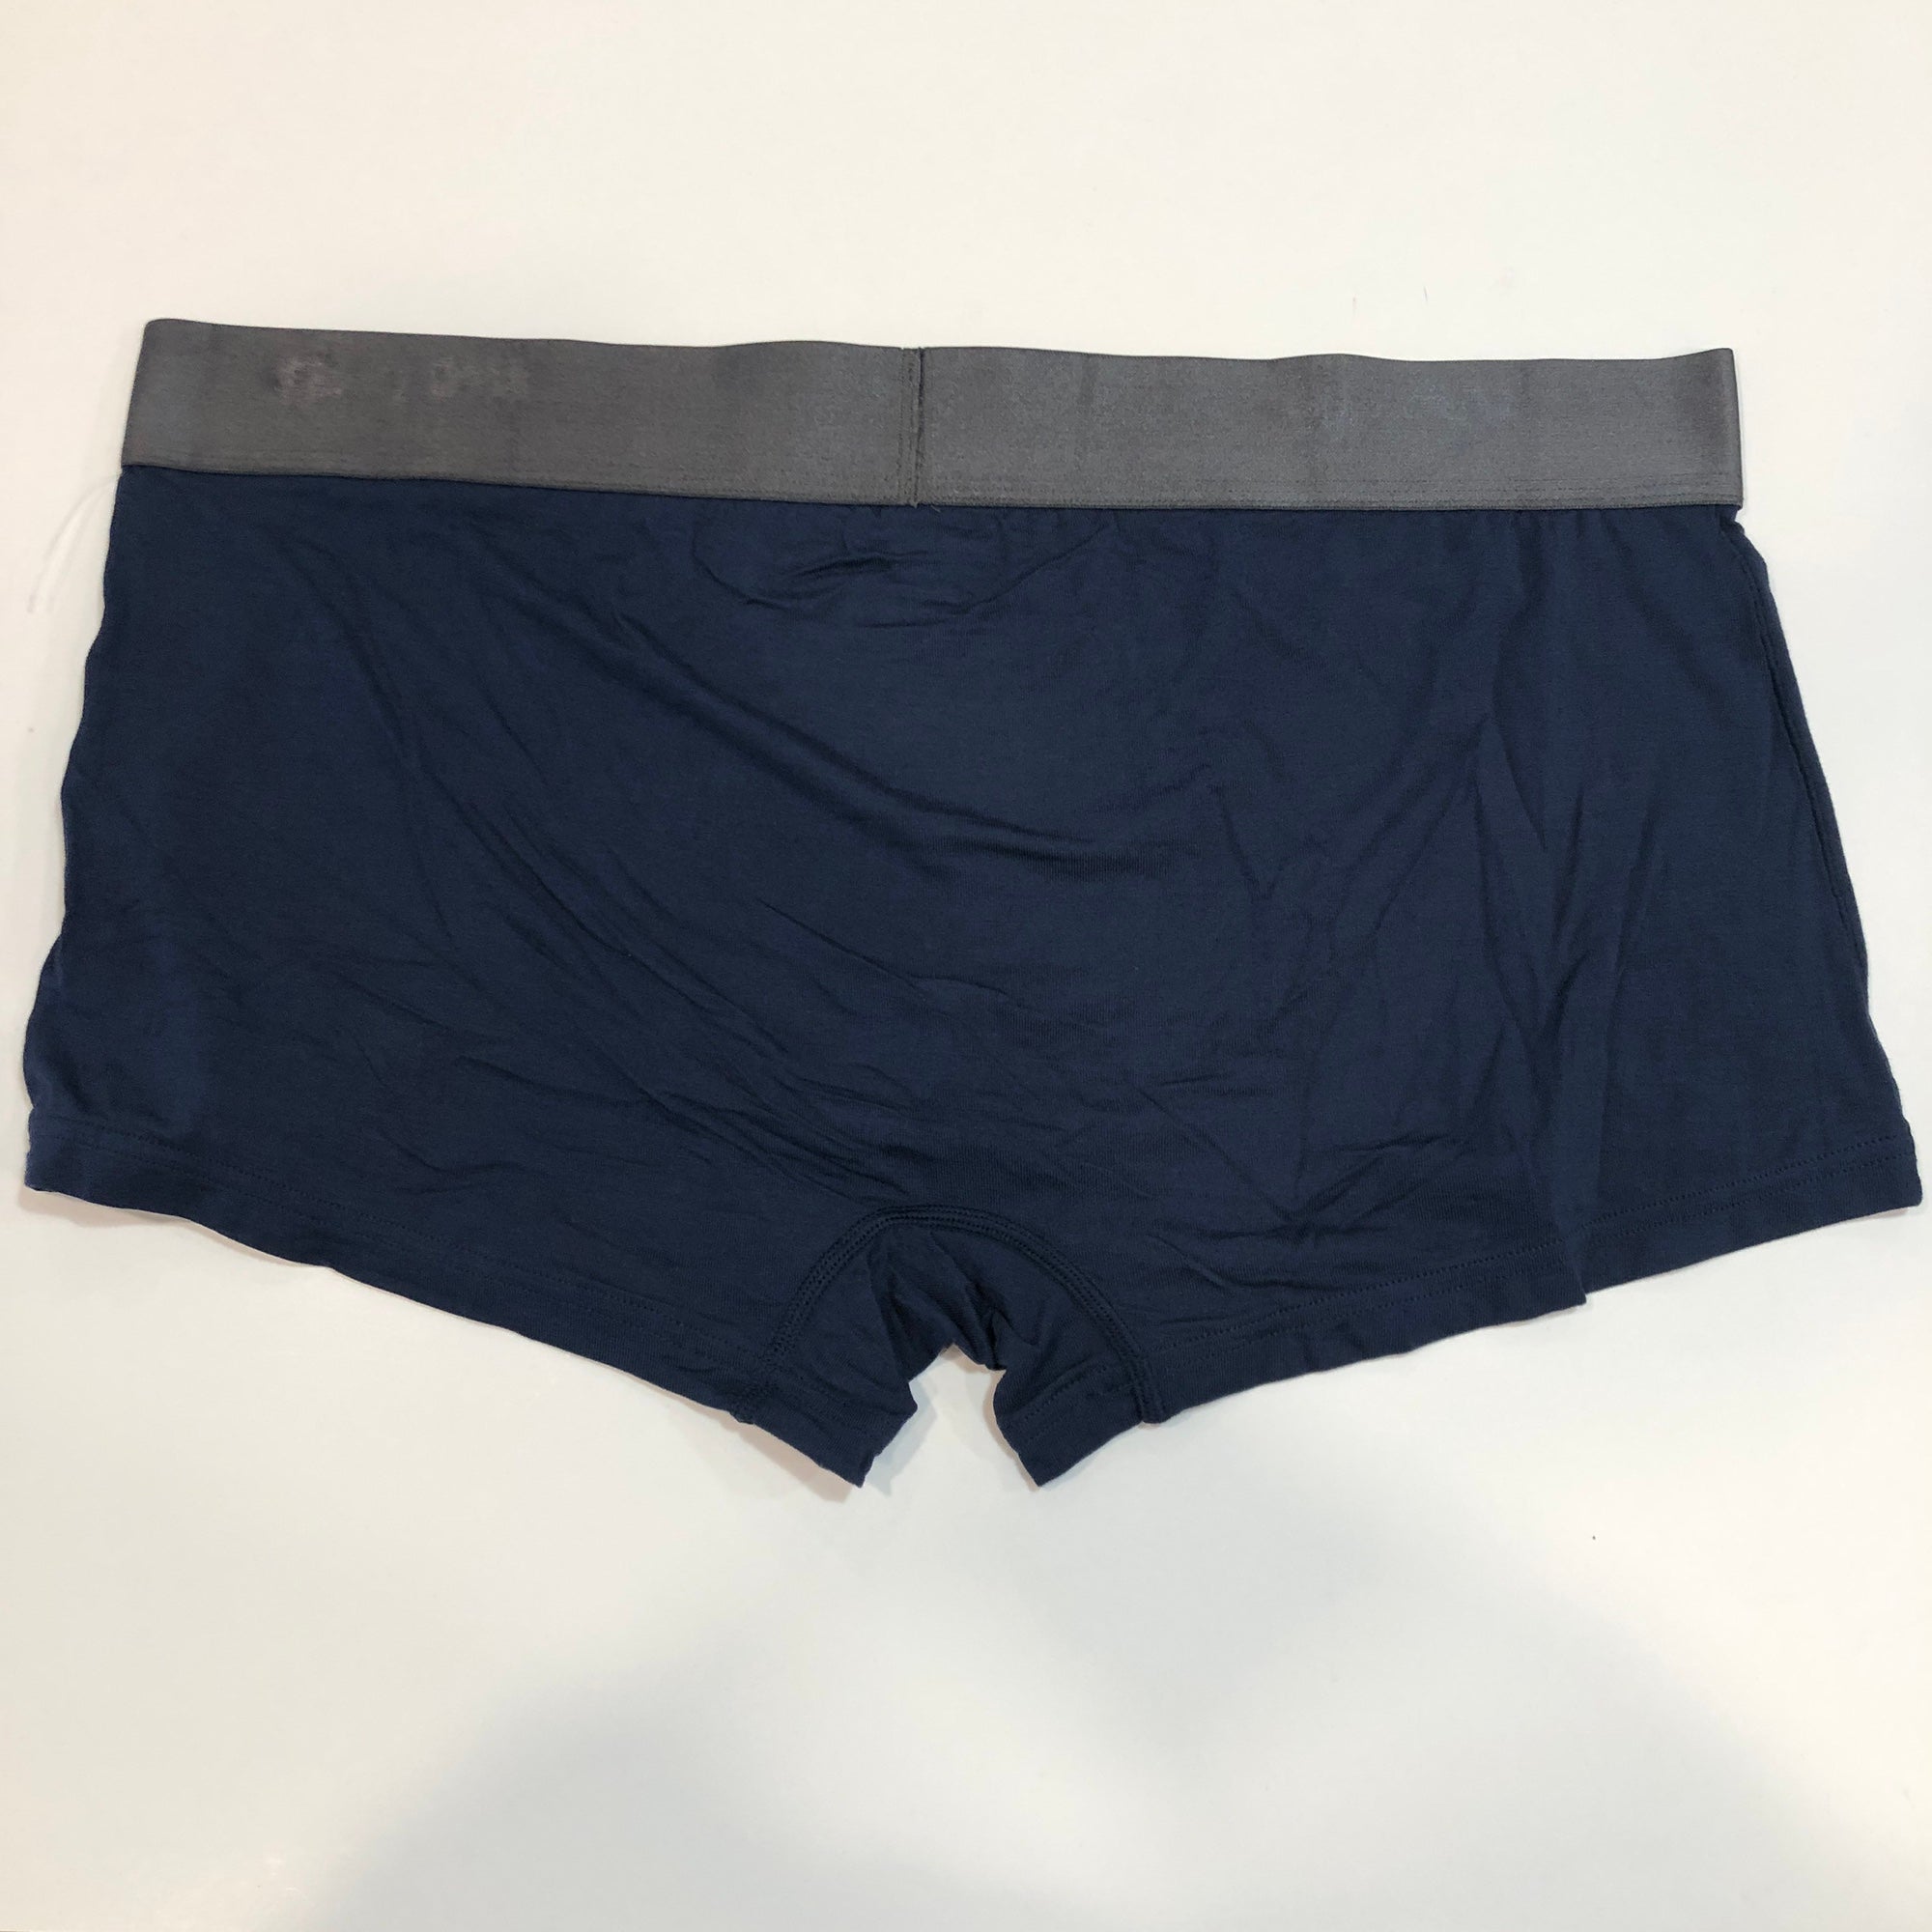 New Tommy John Second Skin Men's Trunk Underwear XL